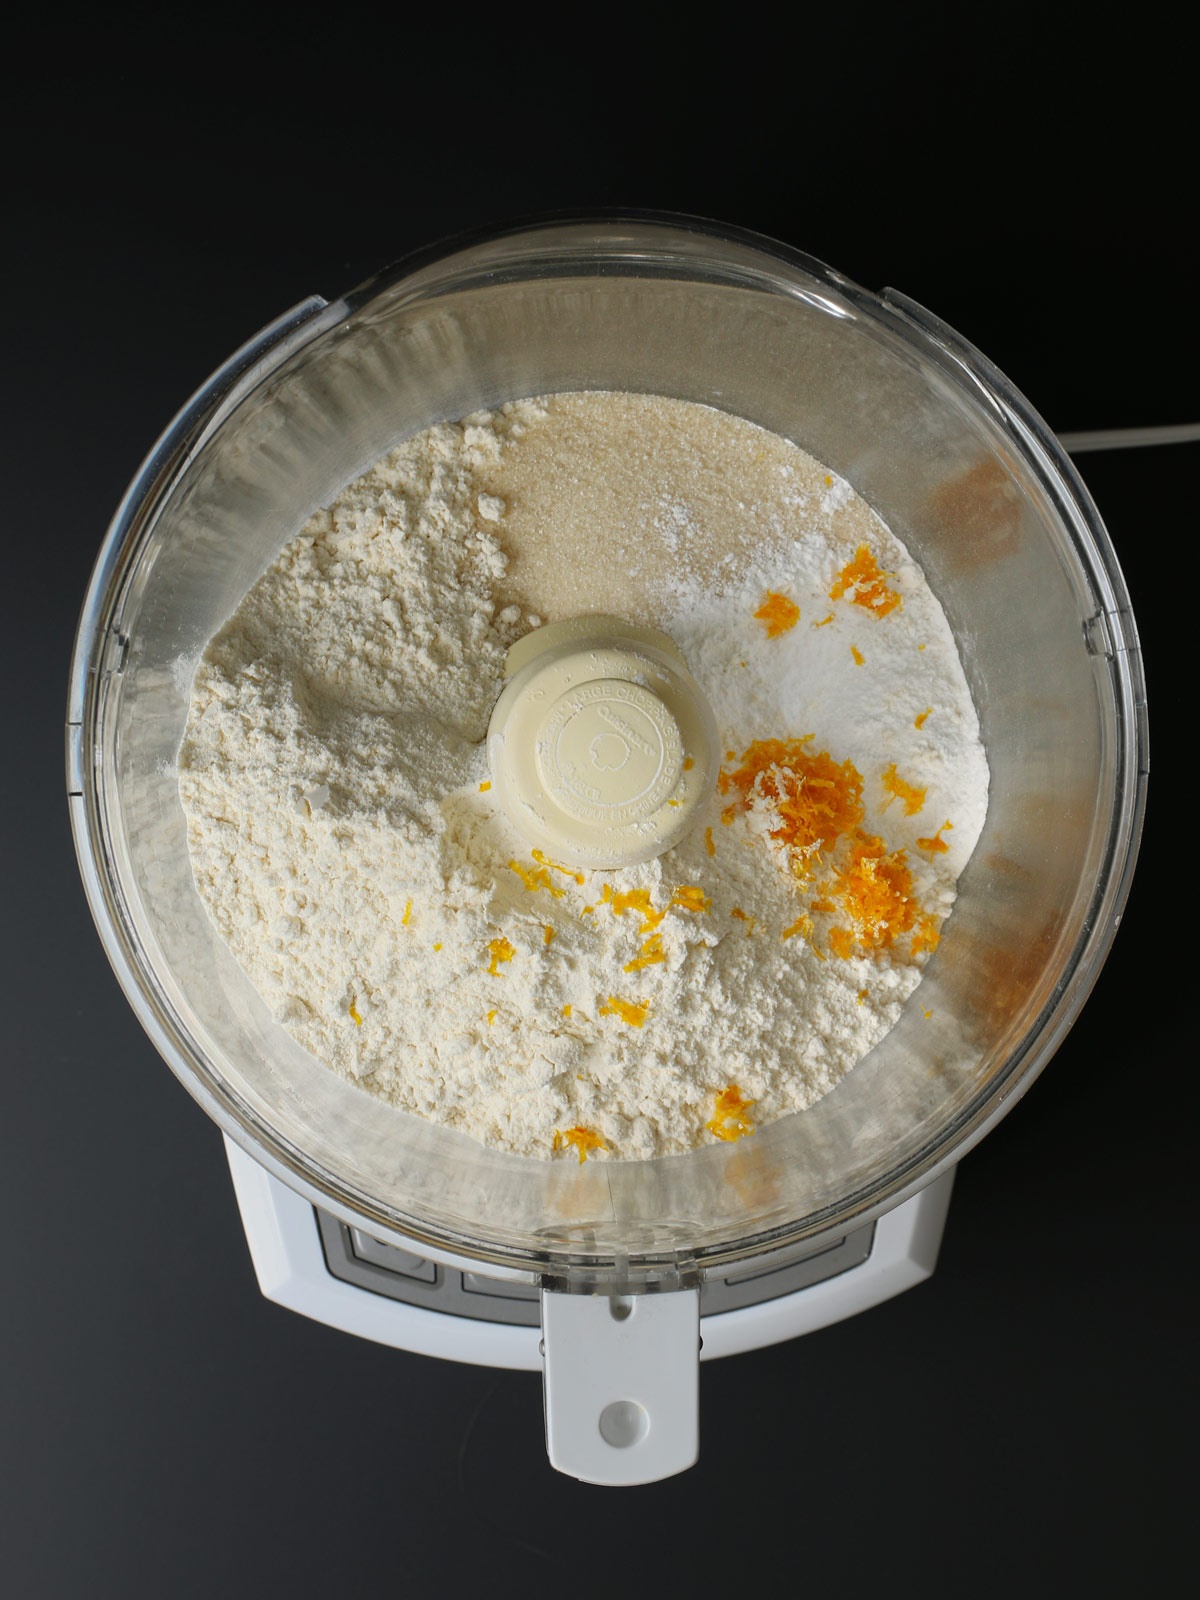 dry ingredients in food processor bowl.